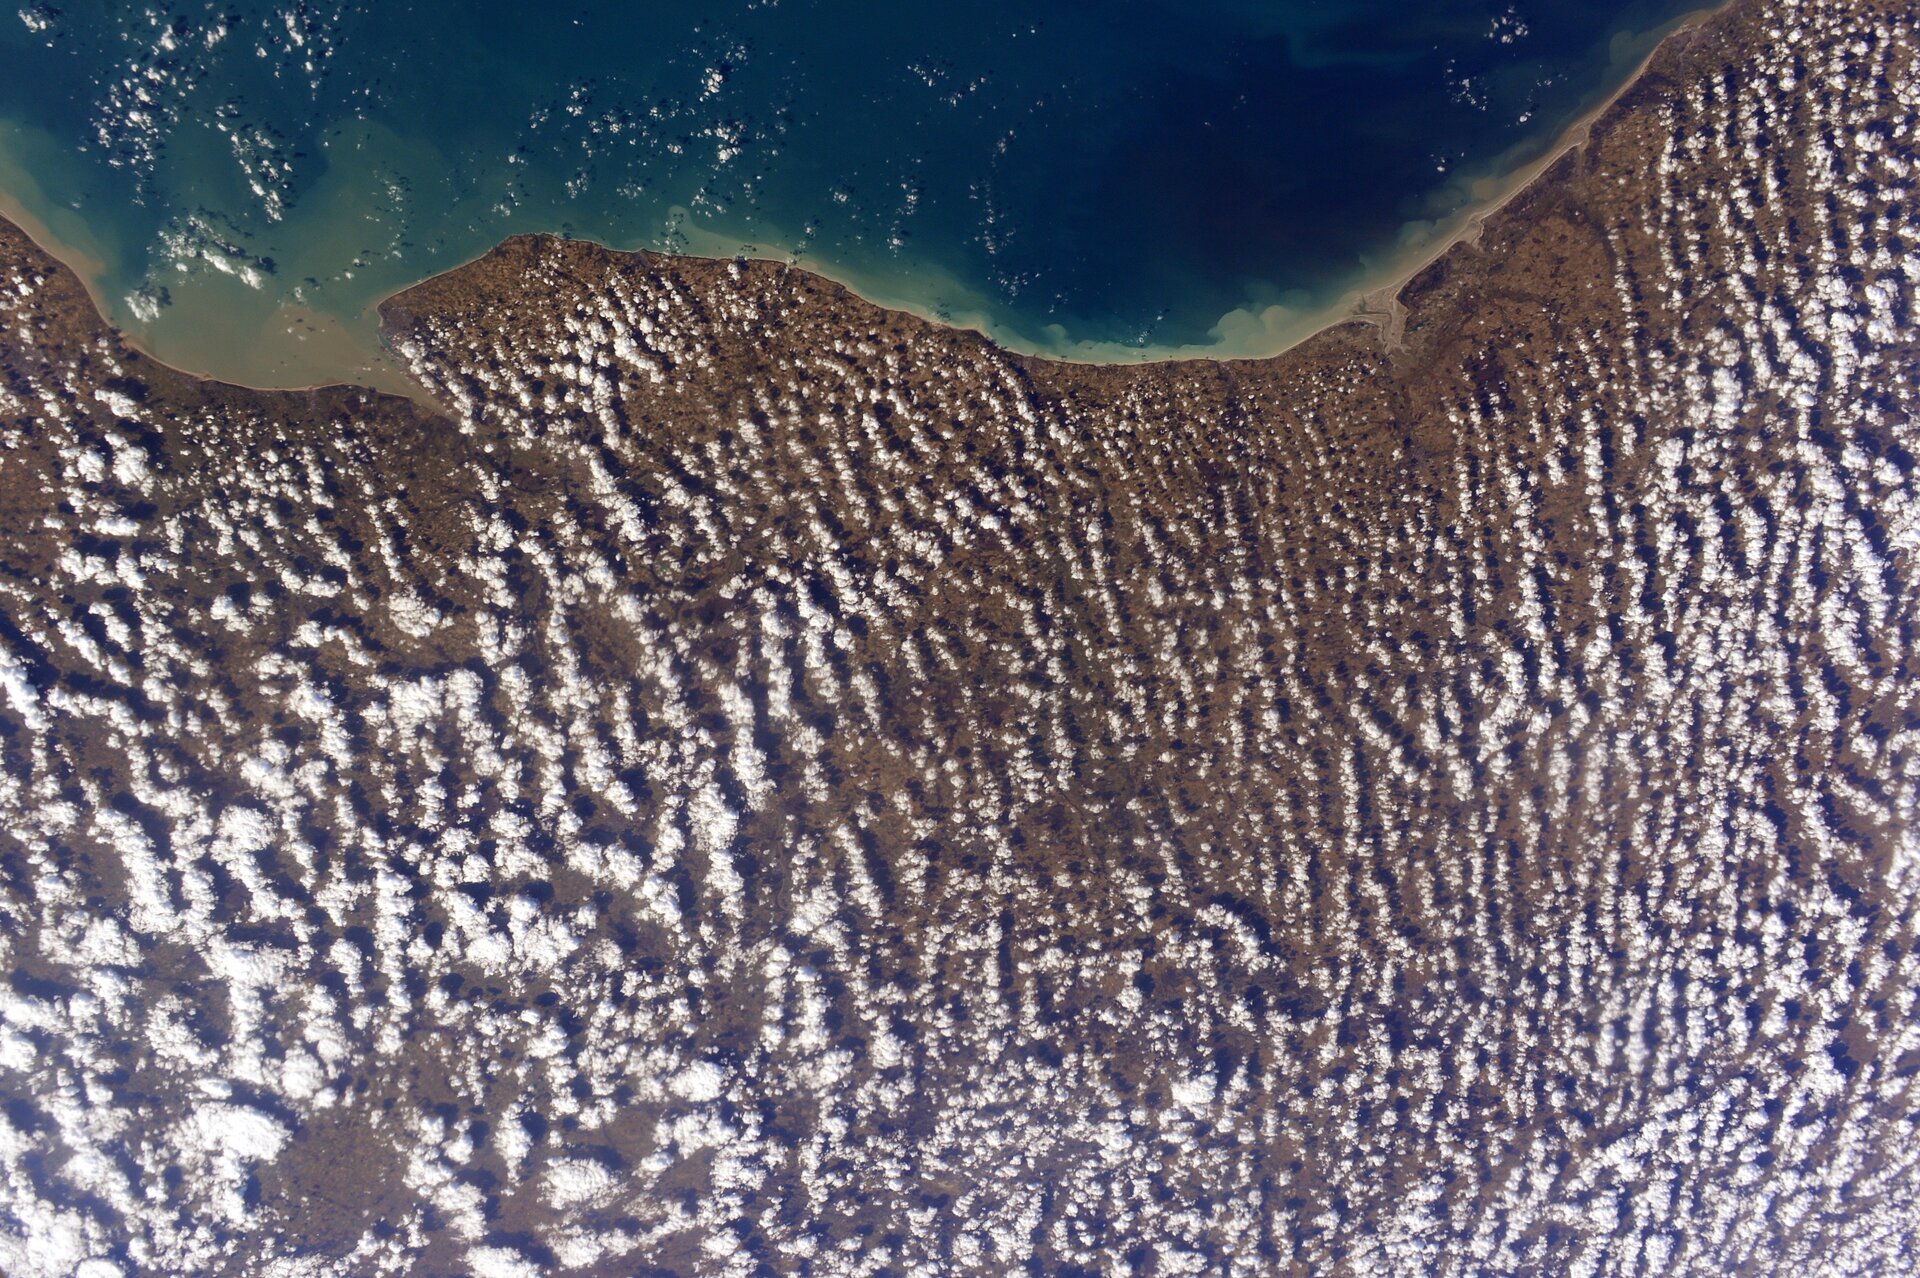 Haute-Normandie, France, vue depuis la Station spatiale